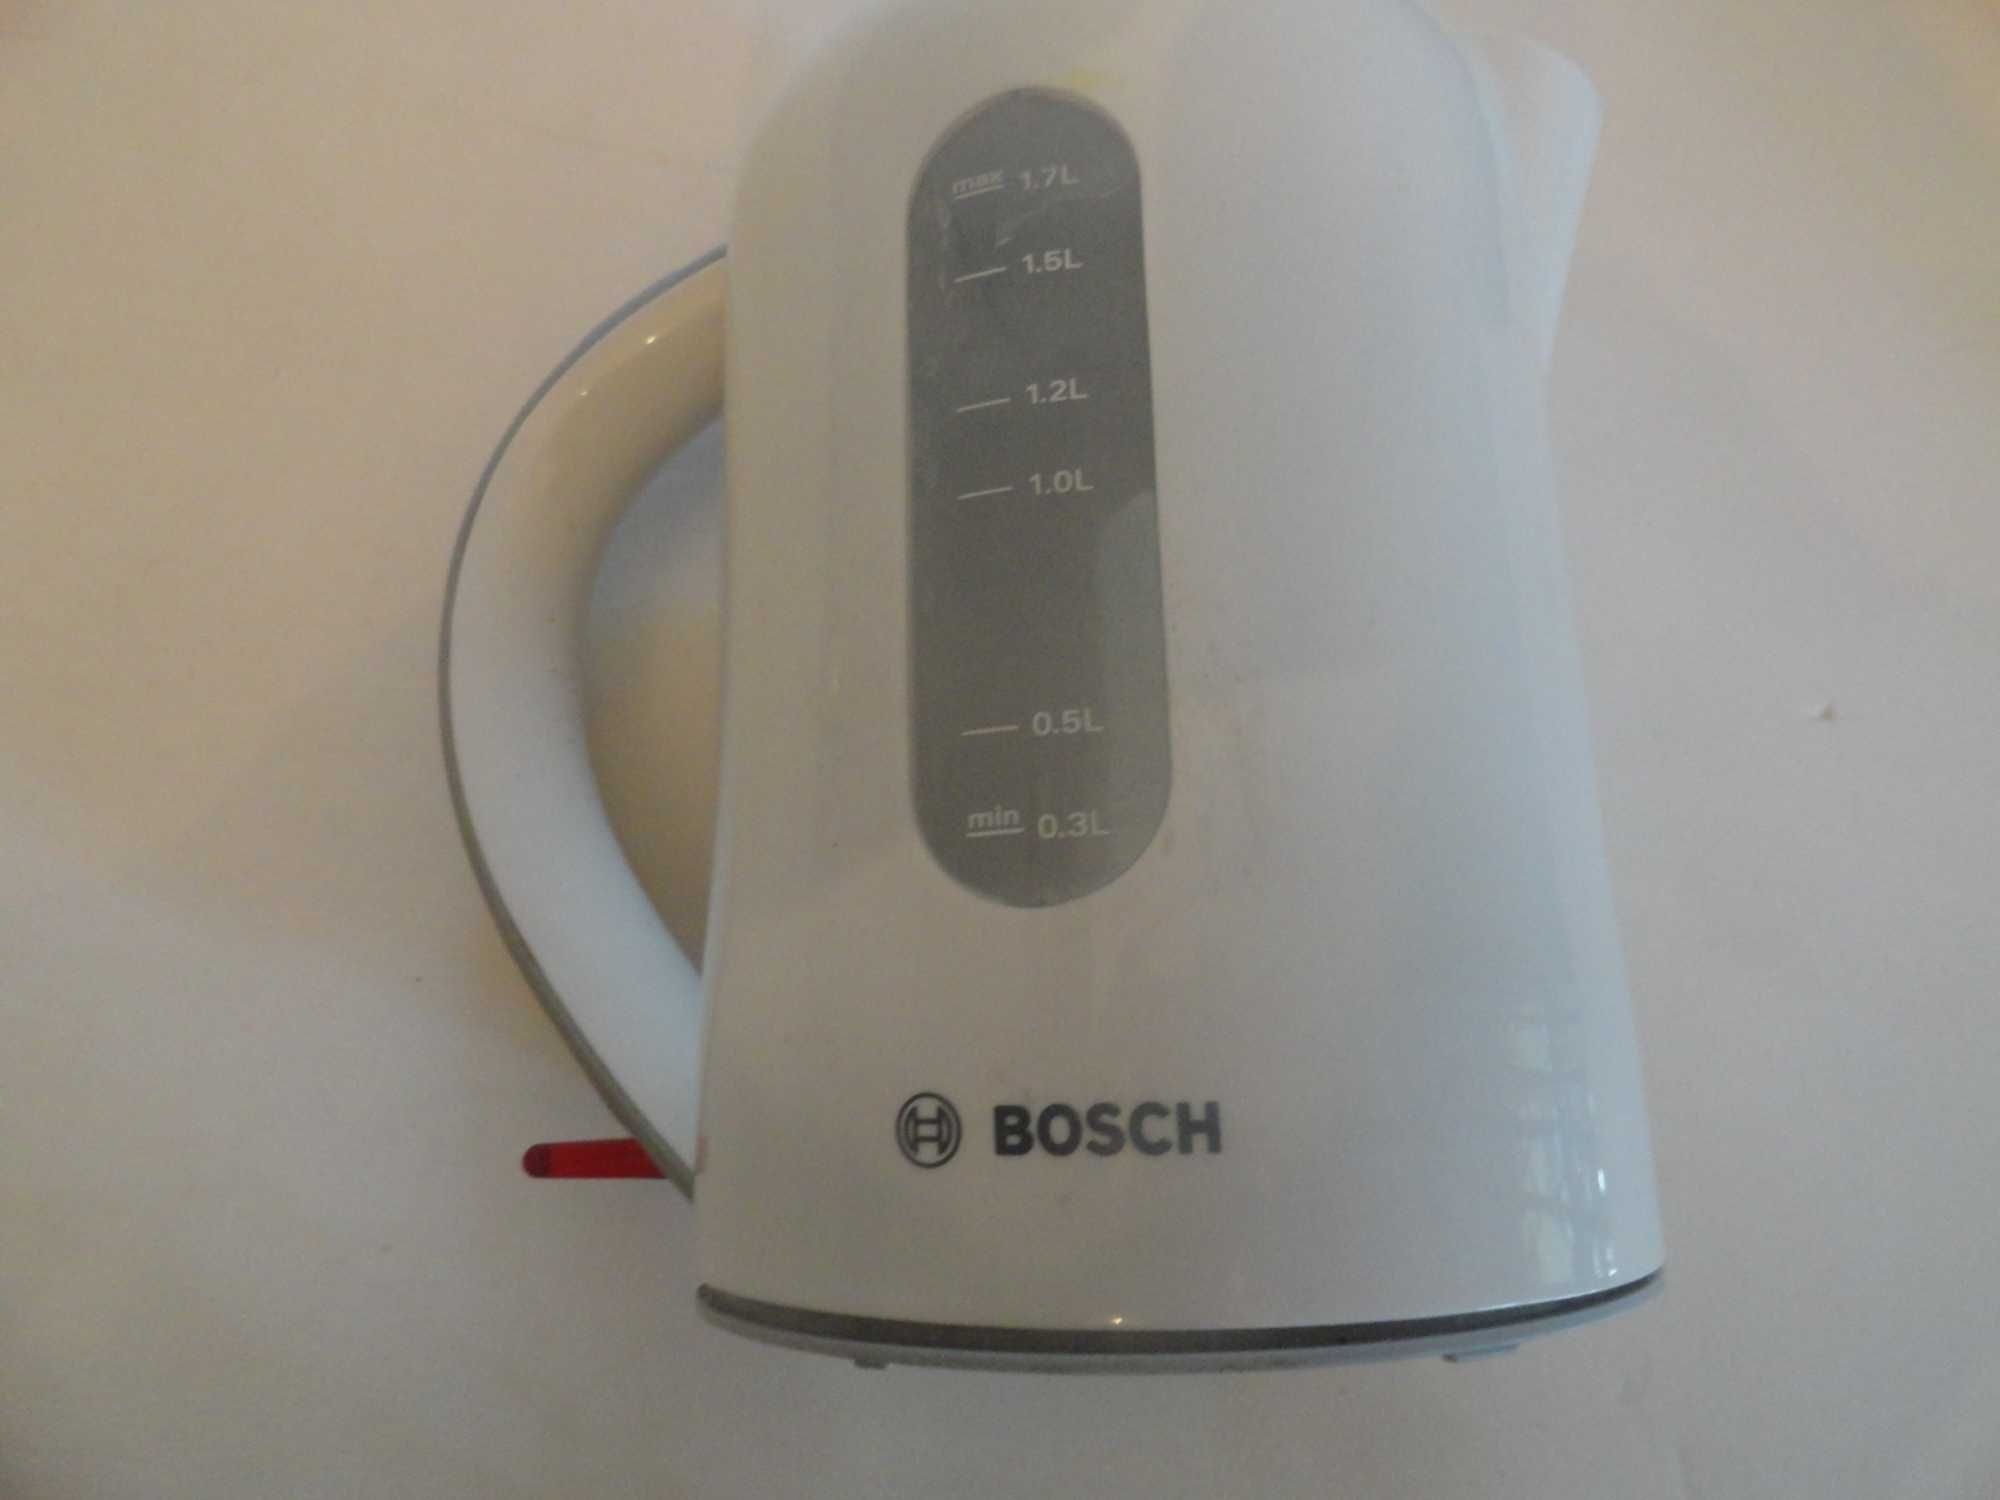 Czajnik Bosch na części niekompletny